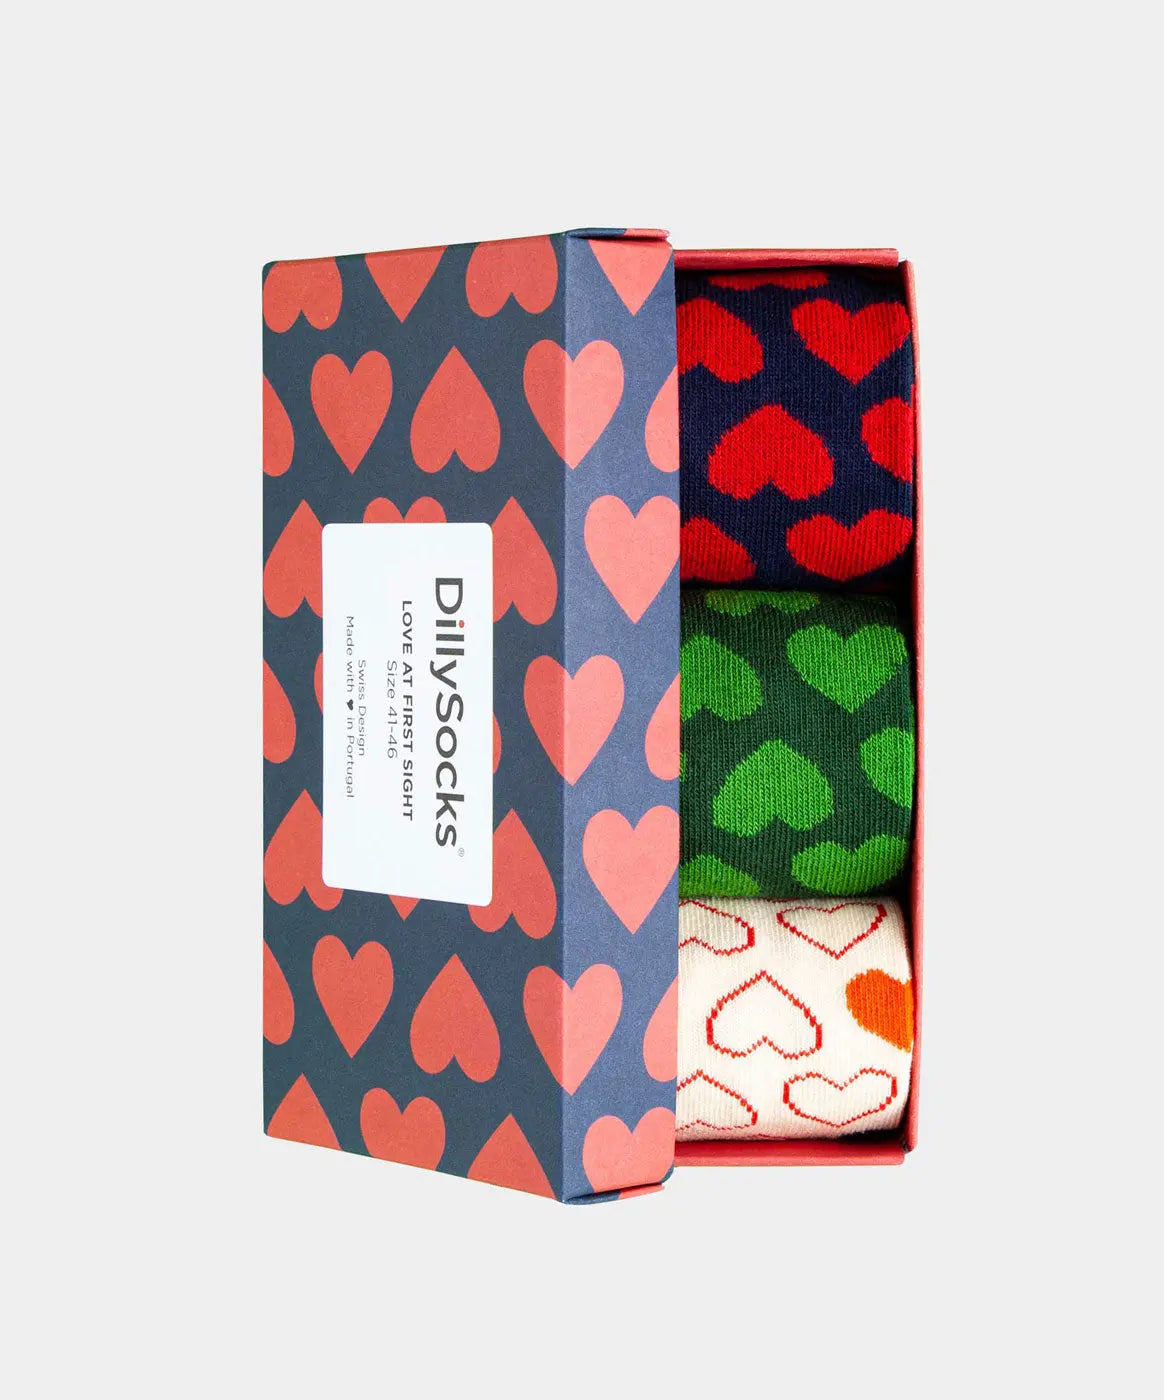 - Socken-Geschenkbox in Blau Rot Beige Grün mit Herz Motiv/Muster von DillySocks